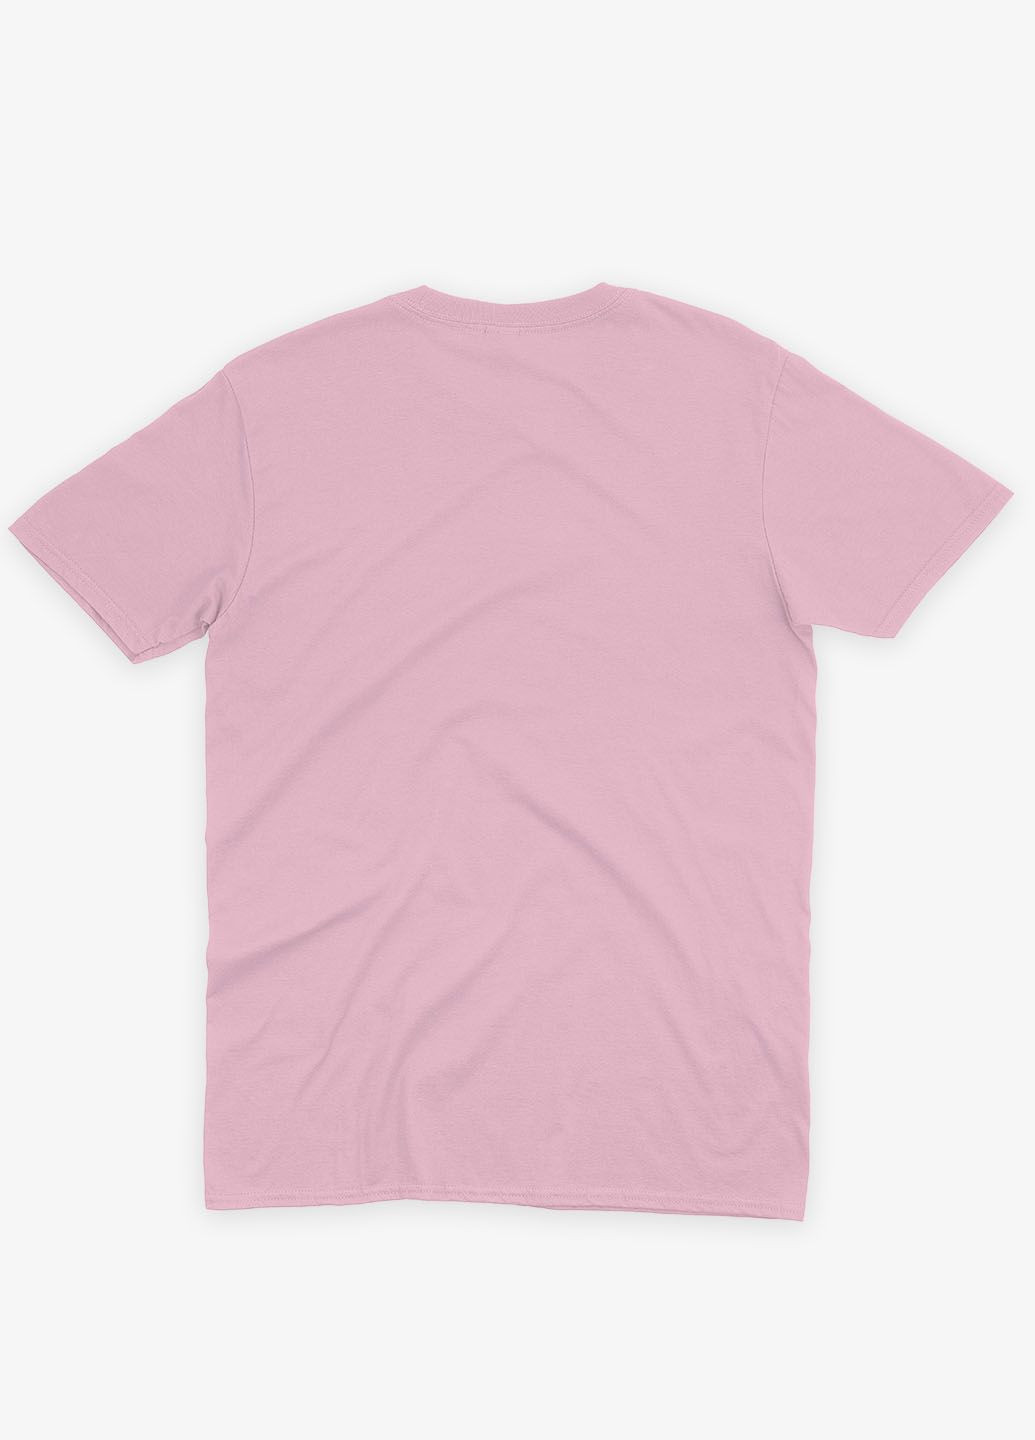 Розовая демисезонная футболка для девочки с патриотическим принтом гербтризуб блидо- (ts001-1-lpinkj-005-1-018-g) Modno